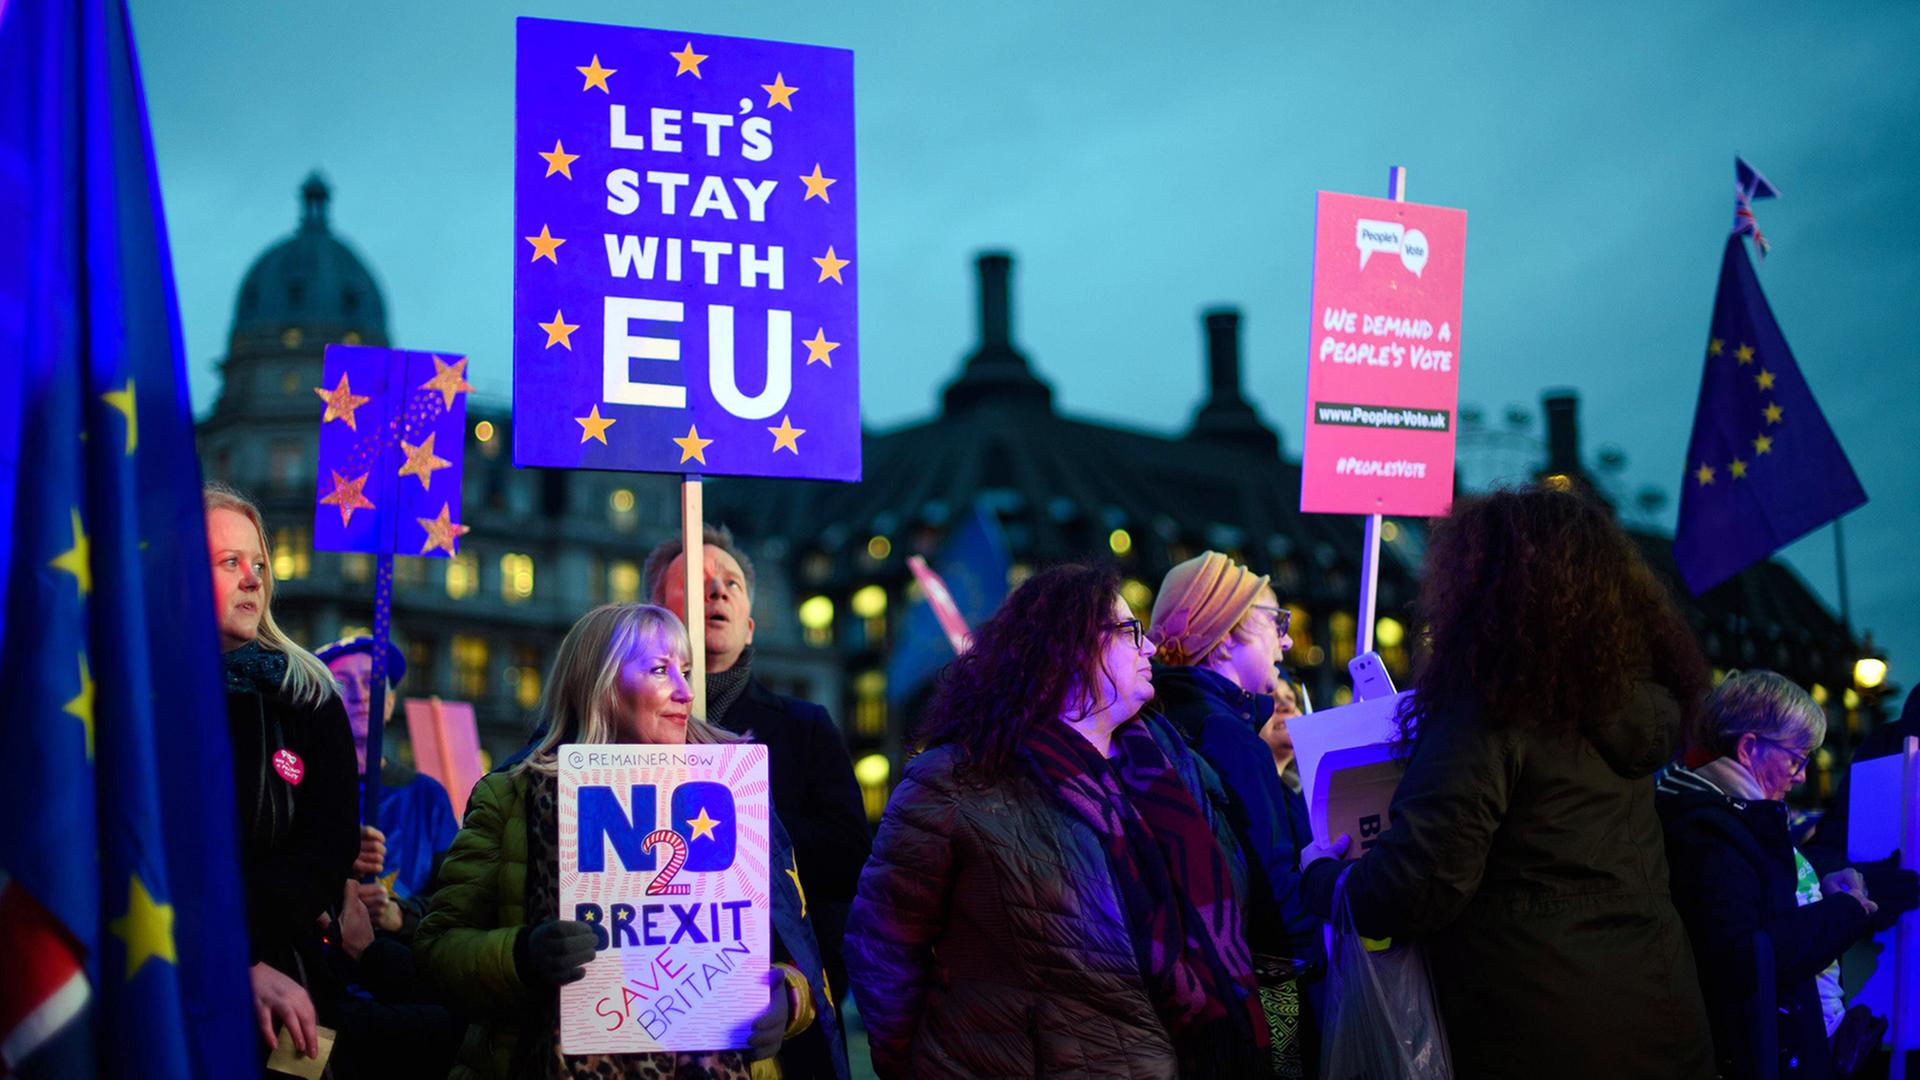 Demonstranten, die den Brexit ablehnen, halten am 15.1.2019 in London Schilder mit der Aufschrift "Let's stay with the EU" und "No 2 Brexit".